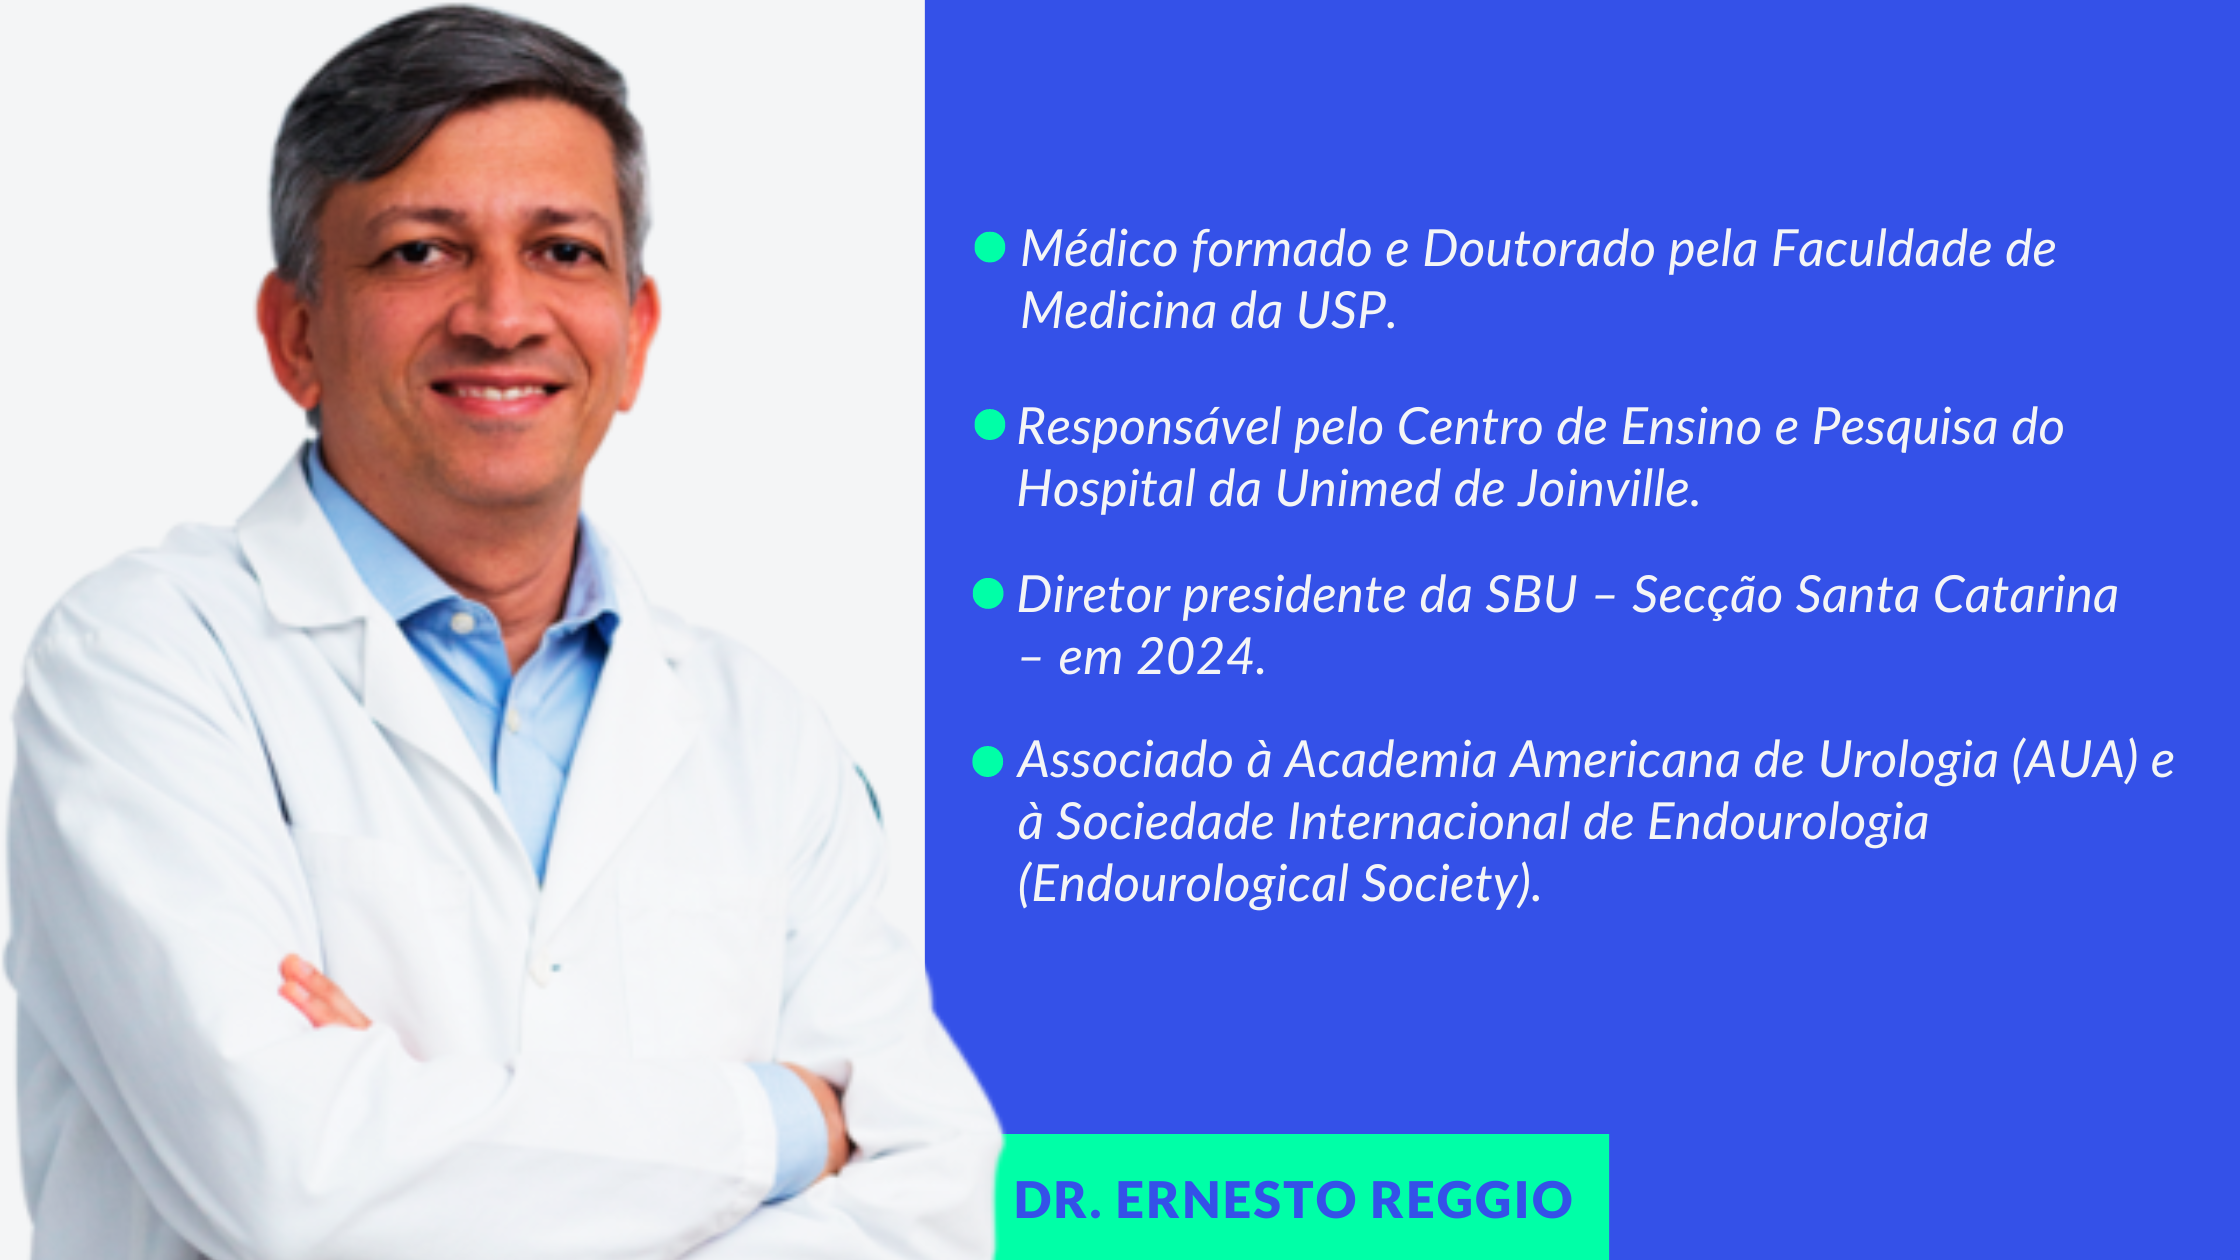 Dr. Ernesto Reggio